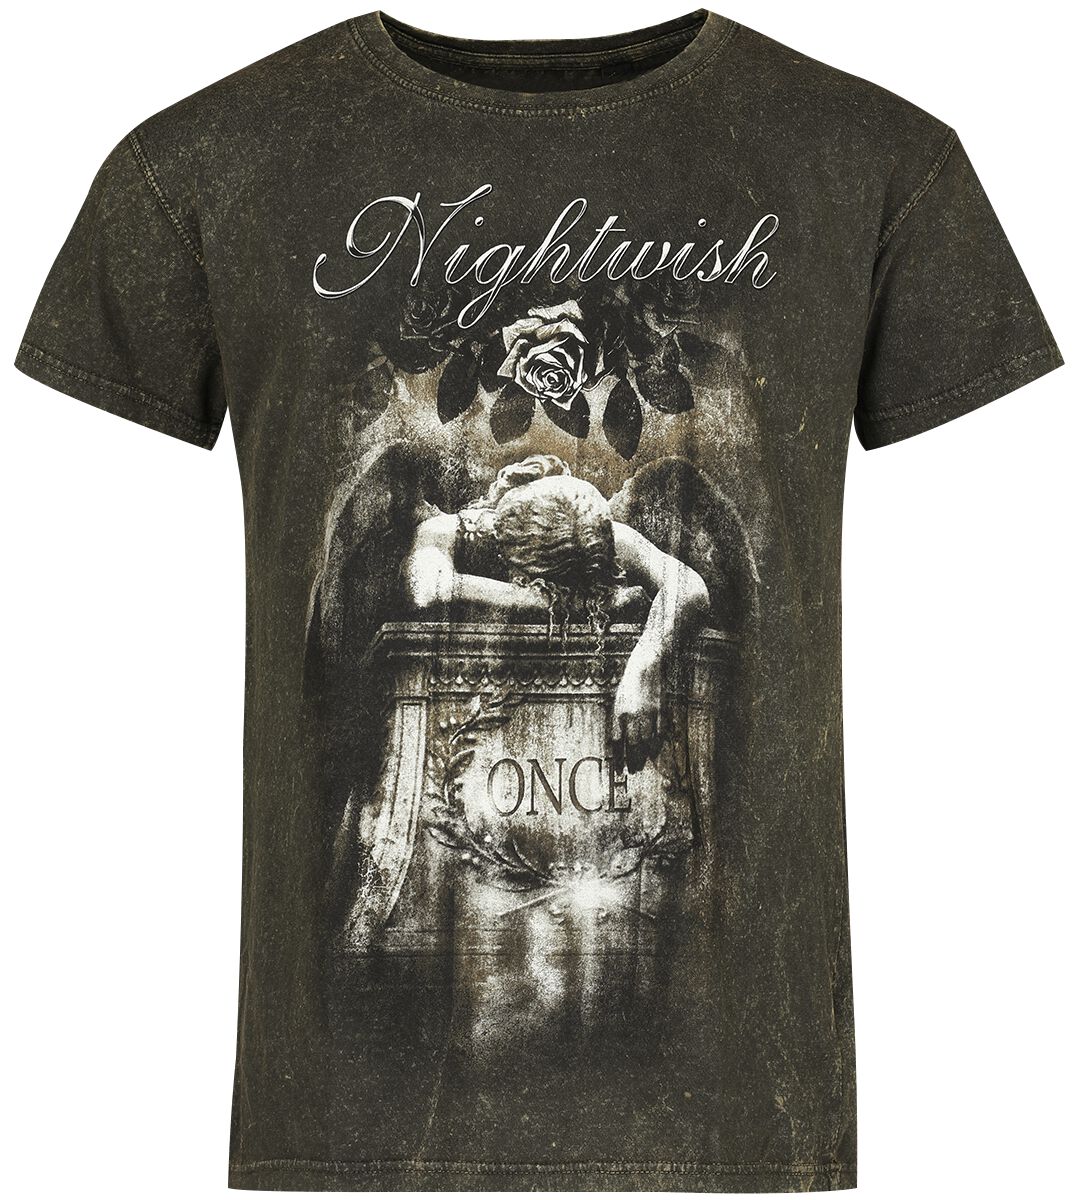 Nightwish T-Shirt - Once - S bis M - für Männer - Größe M - schwarz  - EMP exklusives Merchandise!